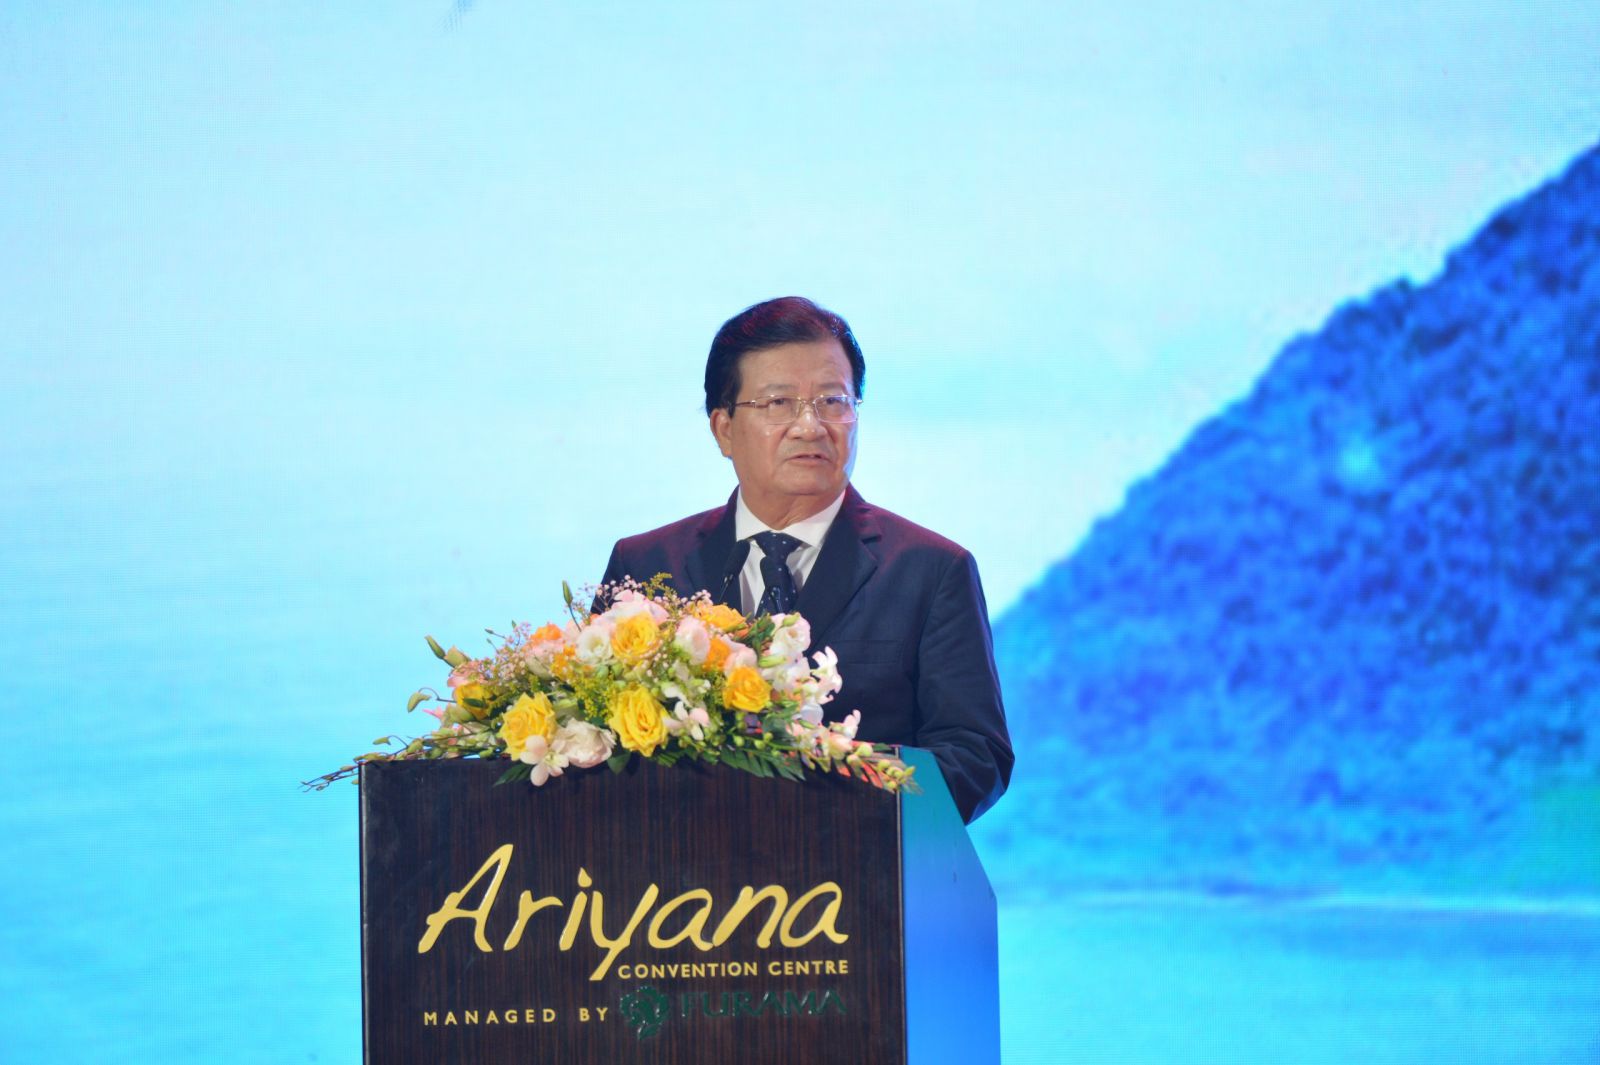 Phó thủ tướng Trịnh Đình Dũng tin tưởng rằng cộng đồng doanh nghiệp sẽ vẫn là nòng cốt quan trọng trọng sự nghiệp phát triển đất nước, đóng góp quan trọng trong sự nghiệp CNH, HĐH.